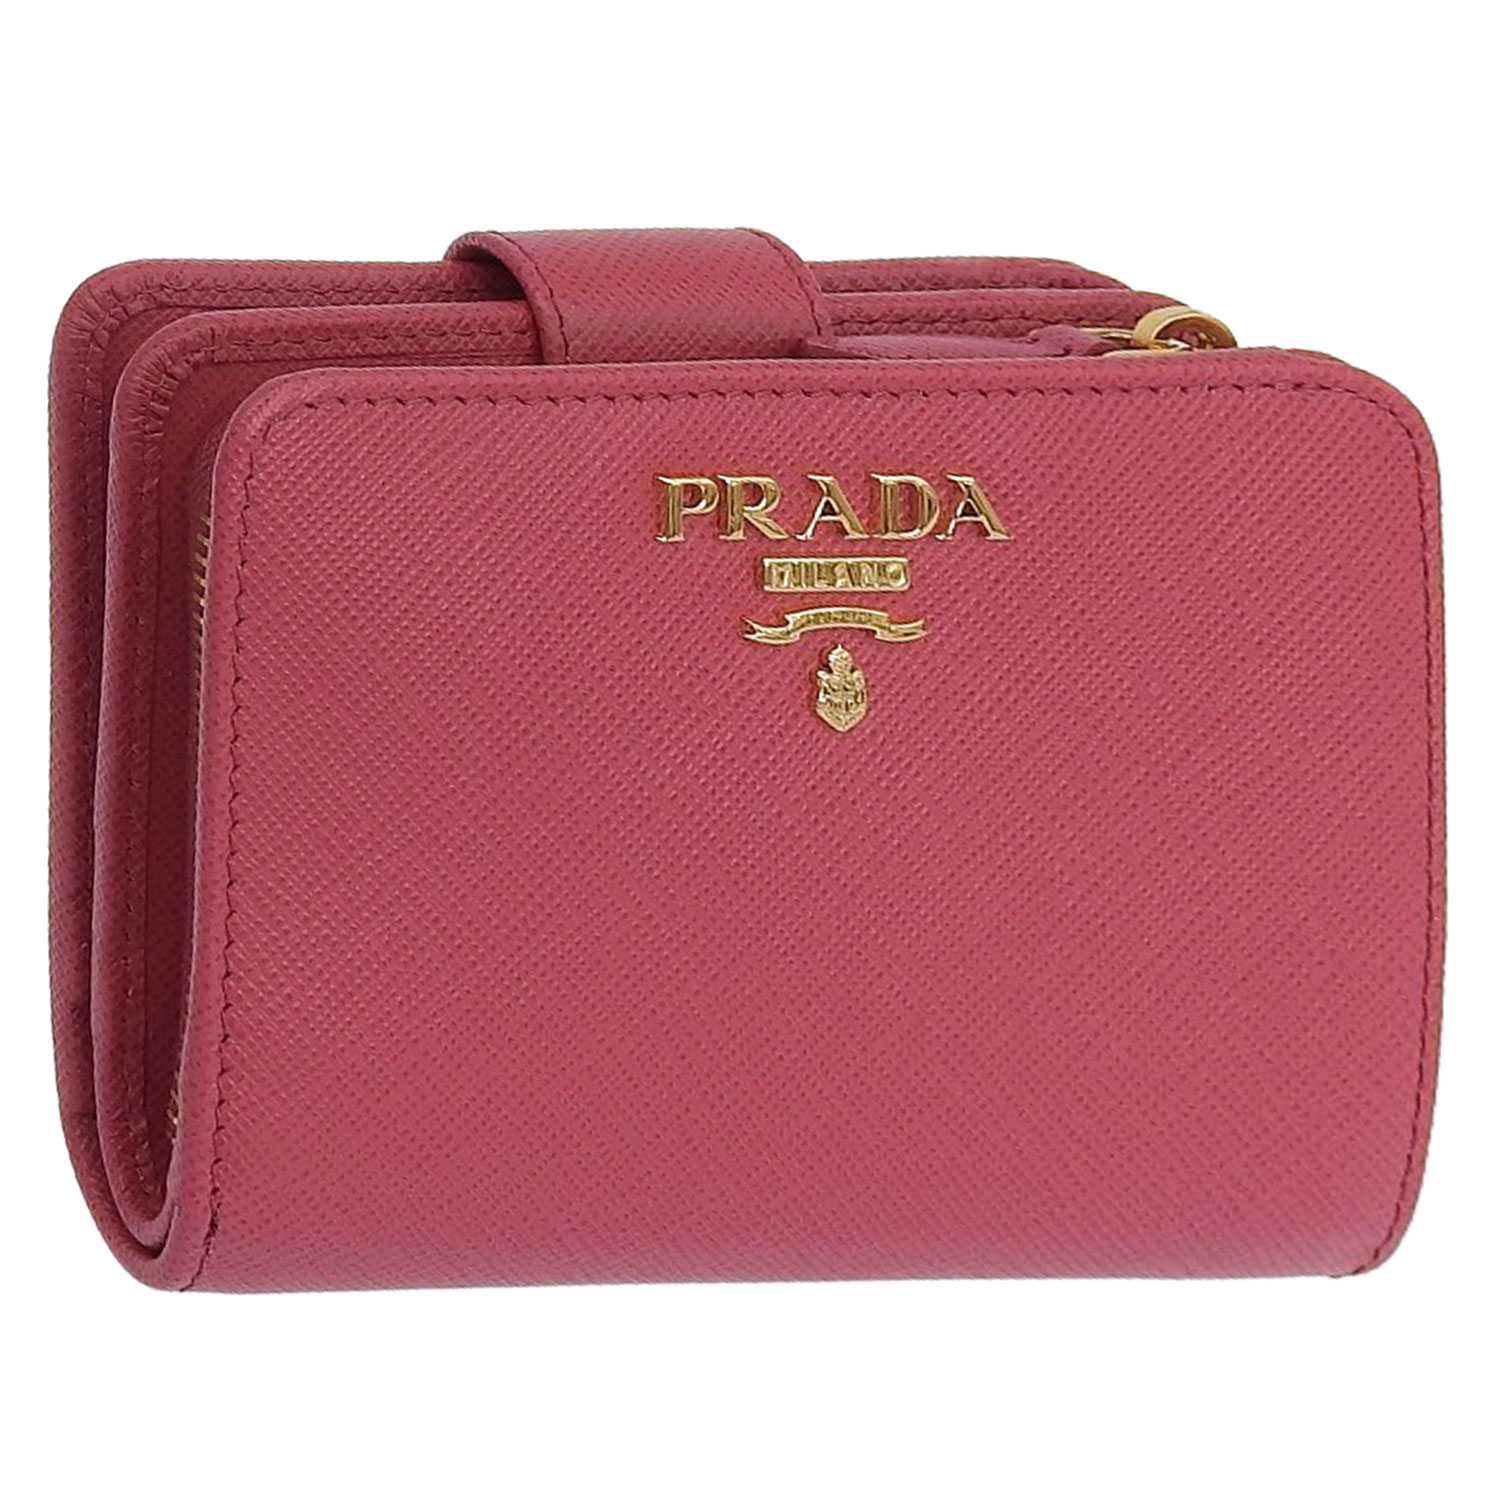 保存箱•タグ•紙袋PRADA プラダ 財布 二つ折りフェラガモ長財布小銭入れカード